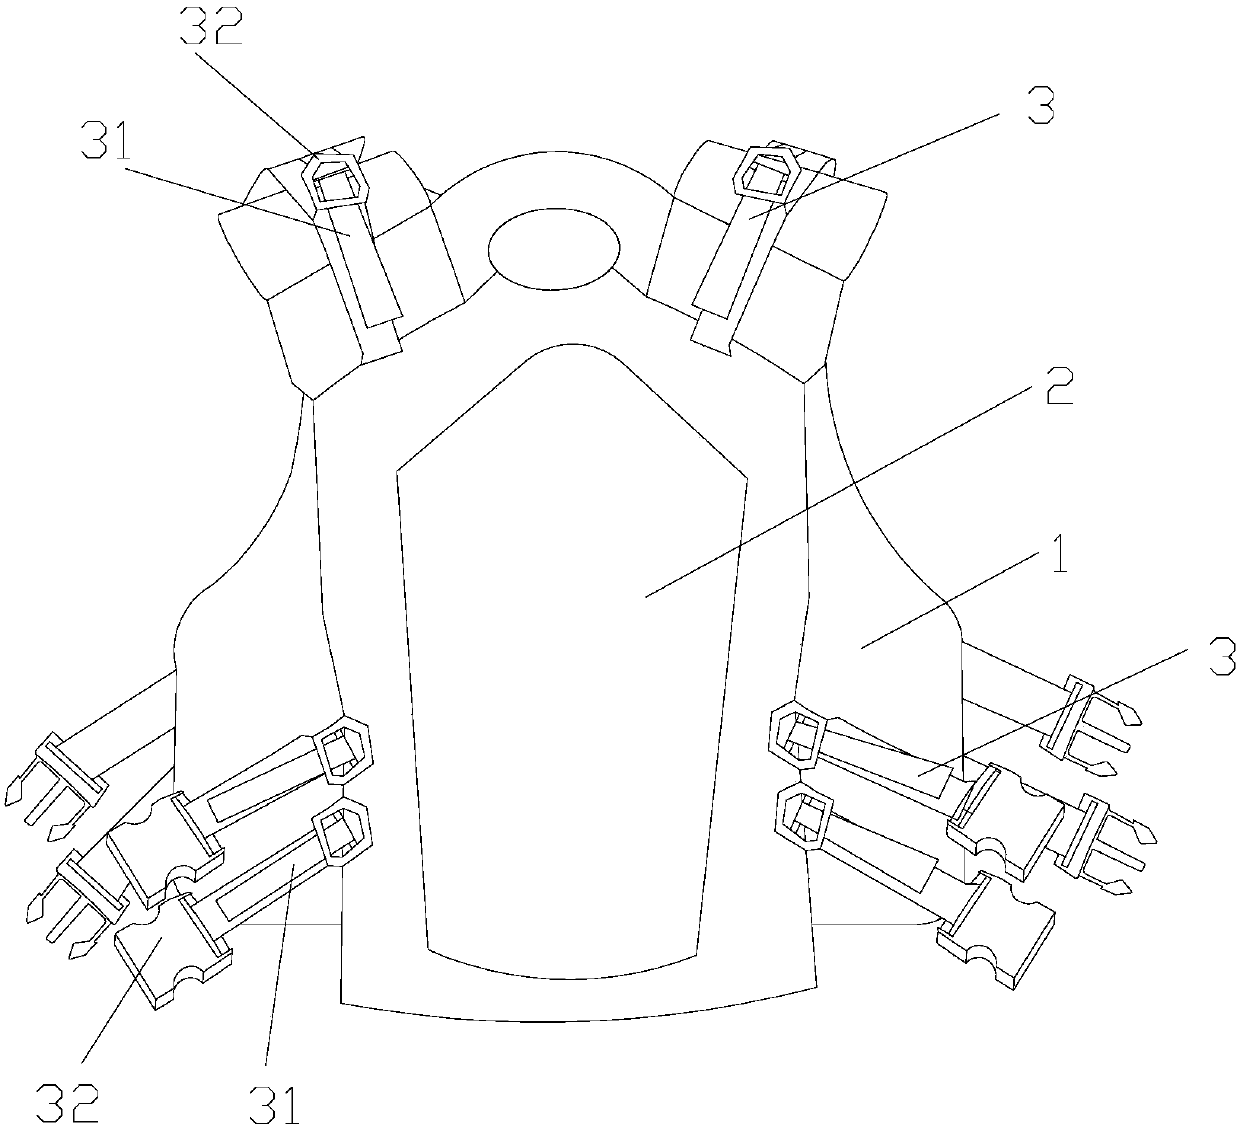 Tightness-adjustable magnetic tool vest